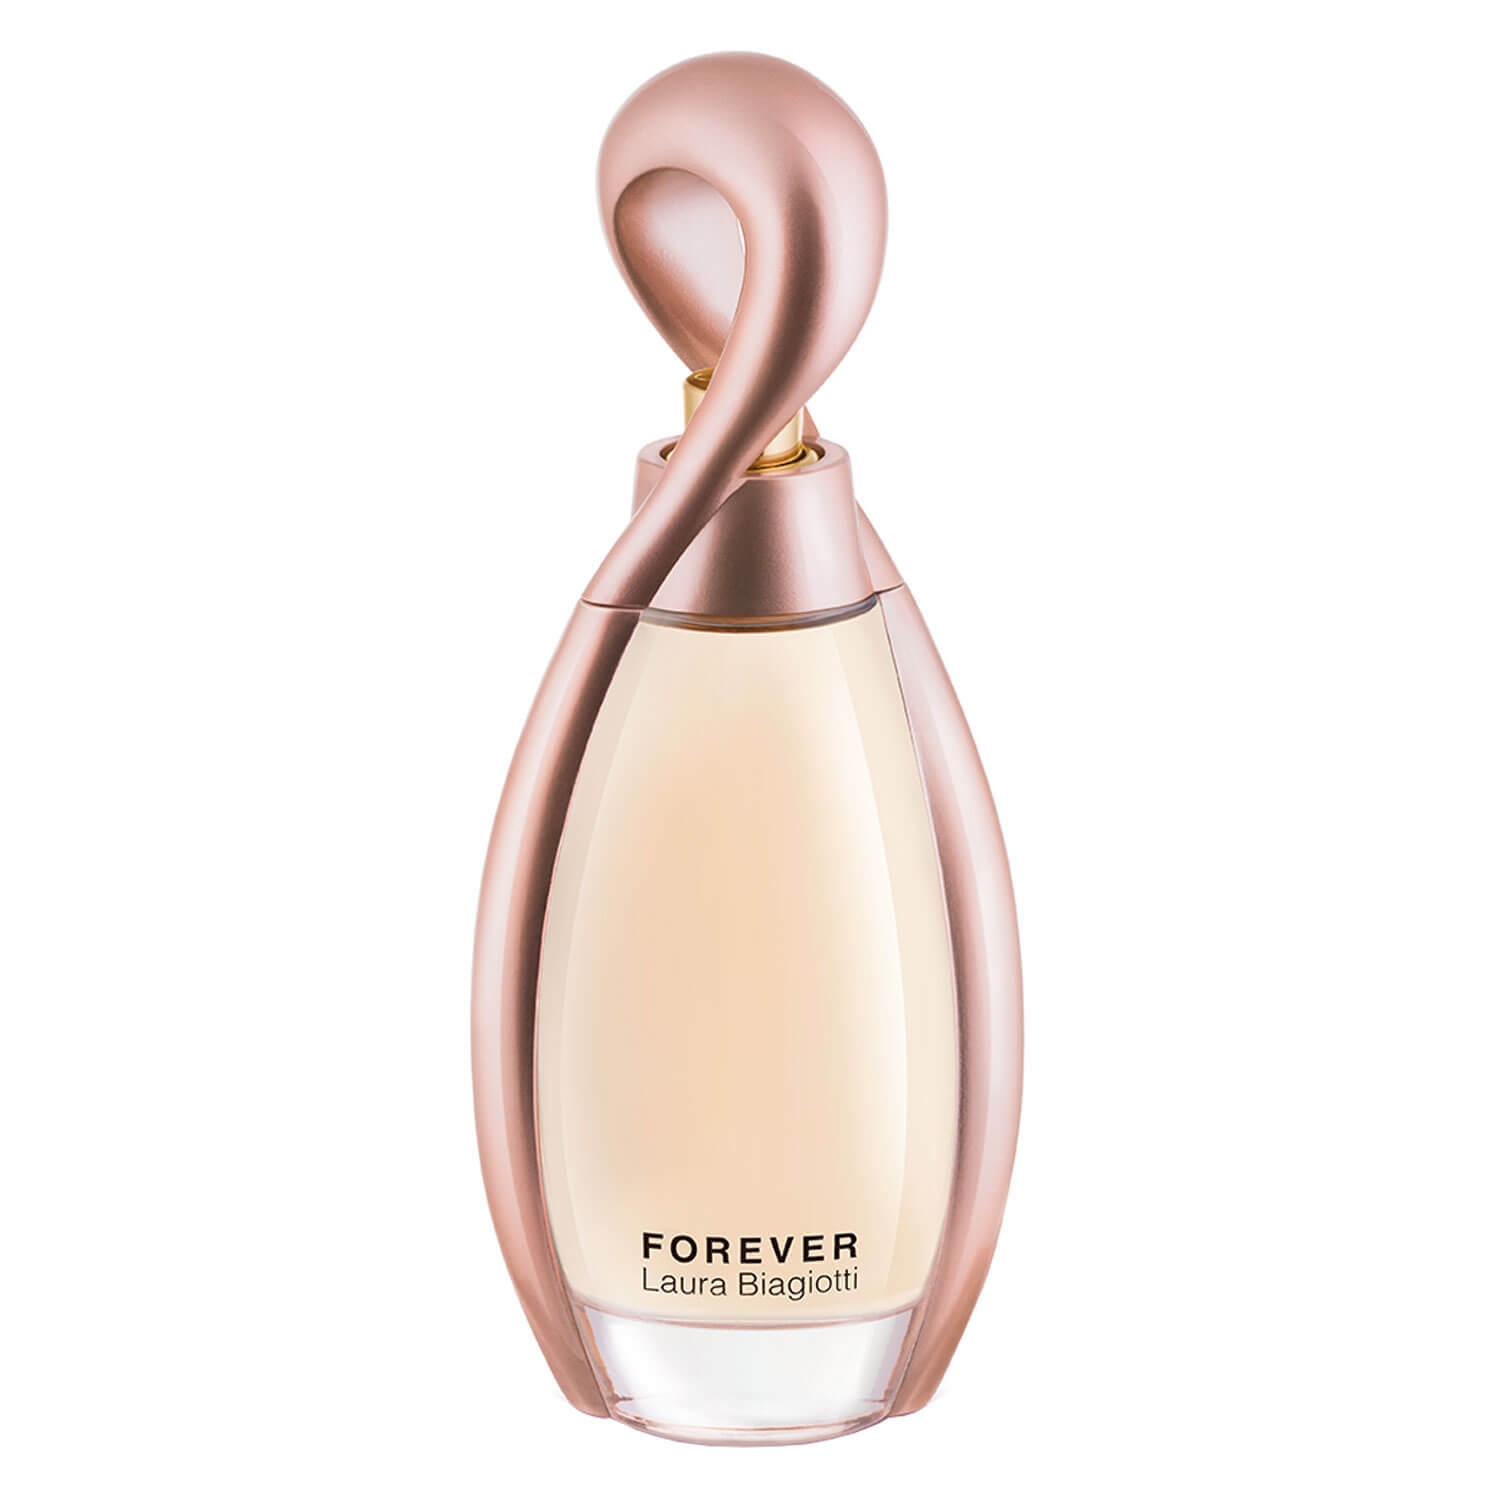 Produktbild von Forever - Eau de Parfum